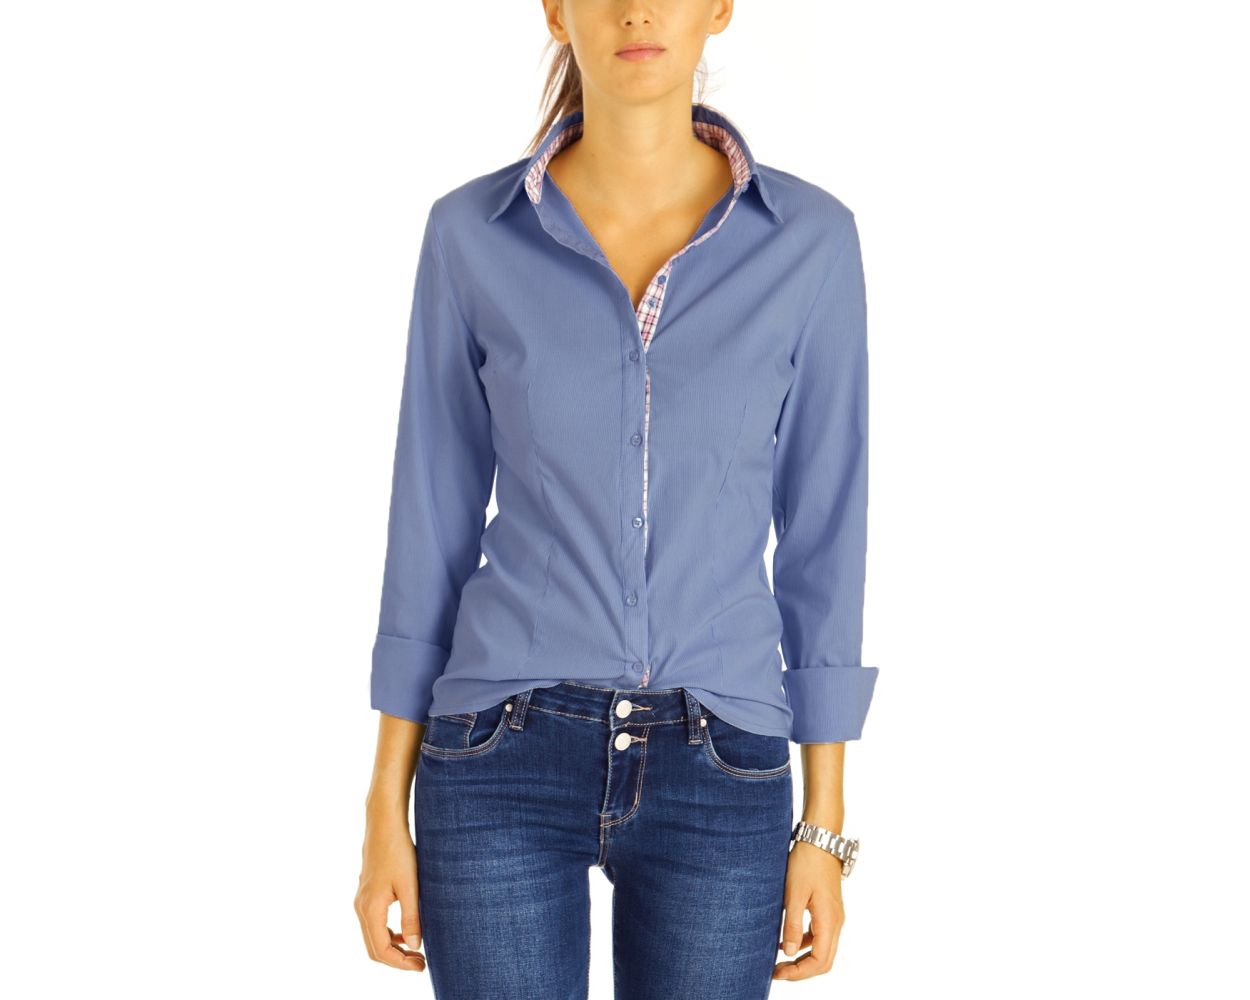 DSquared² Denim Baumwolle hemd in Blau Damen Bekleidung Oberteile Hemden 